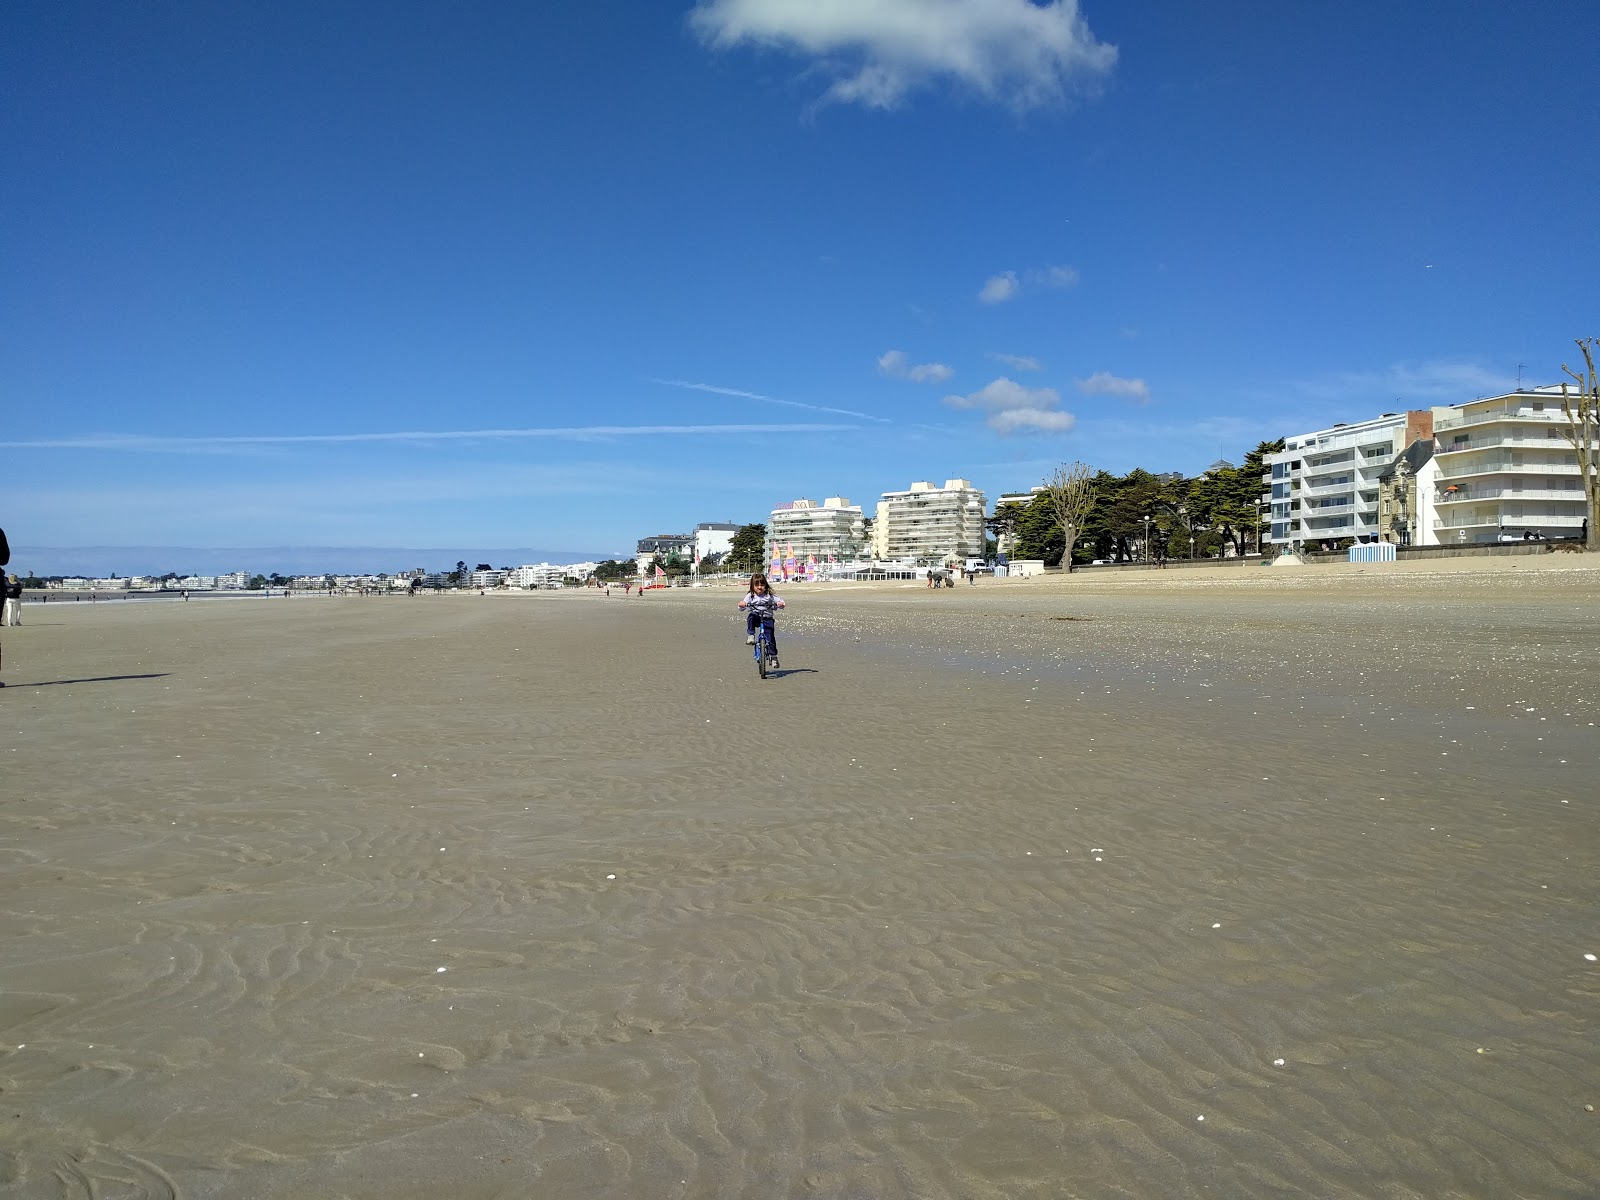 Fotografie cu Benoit beach - locul popular printre cunoscătorii de relaxare